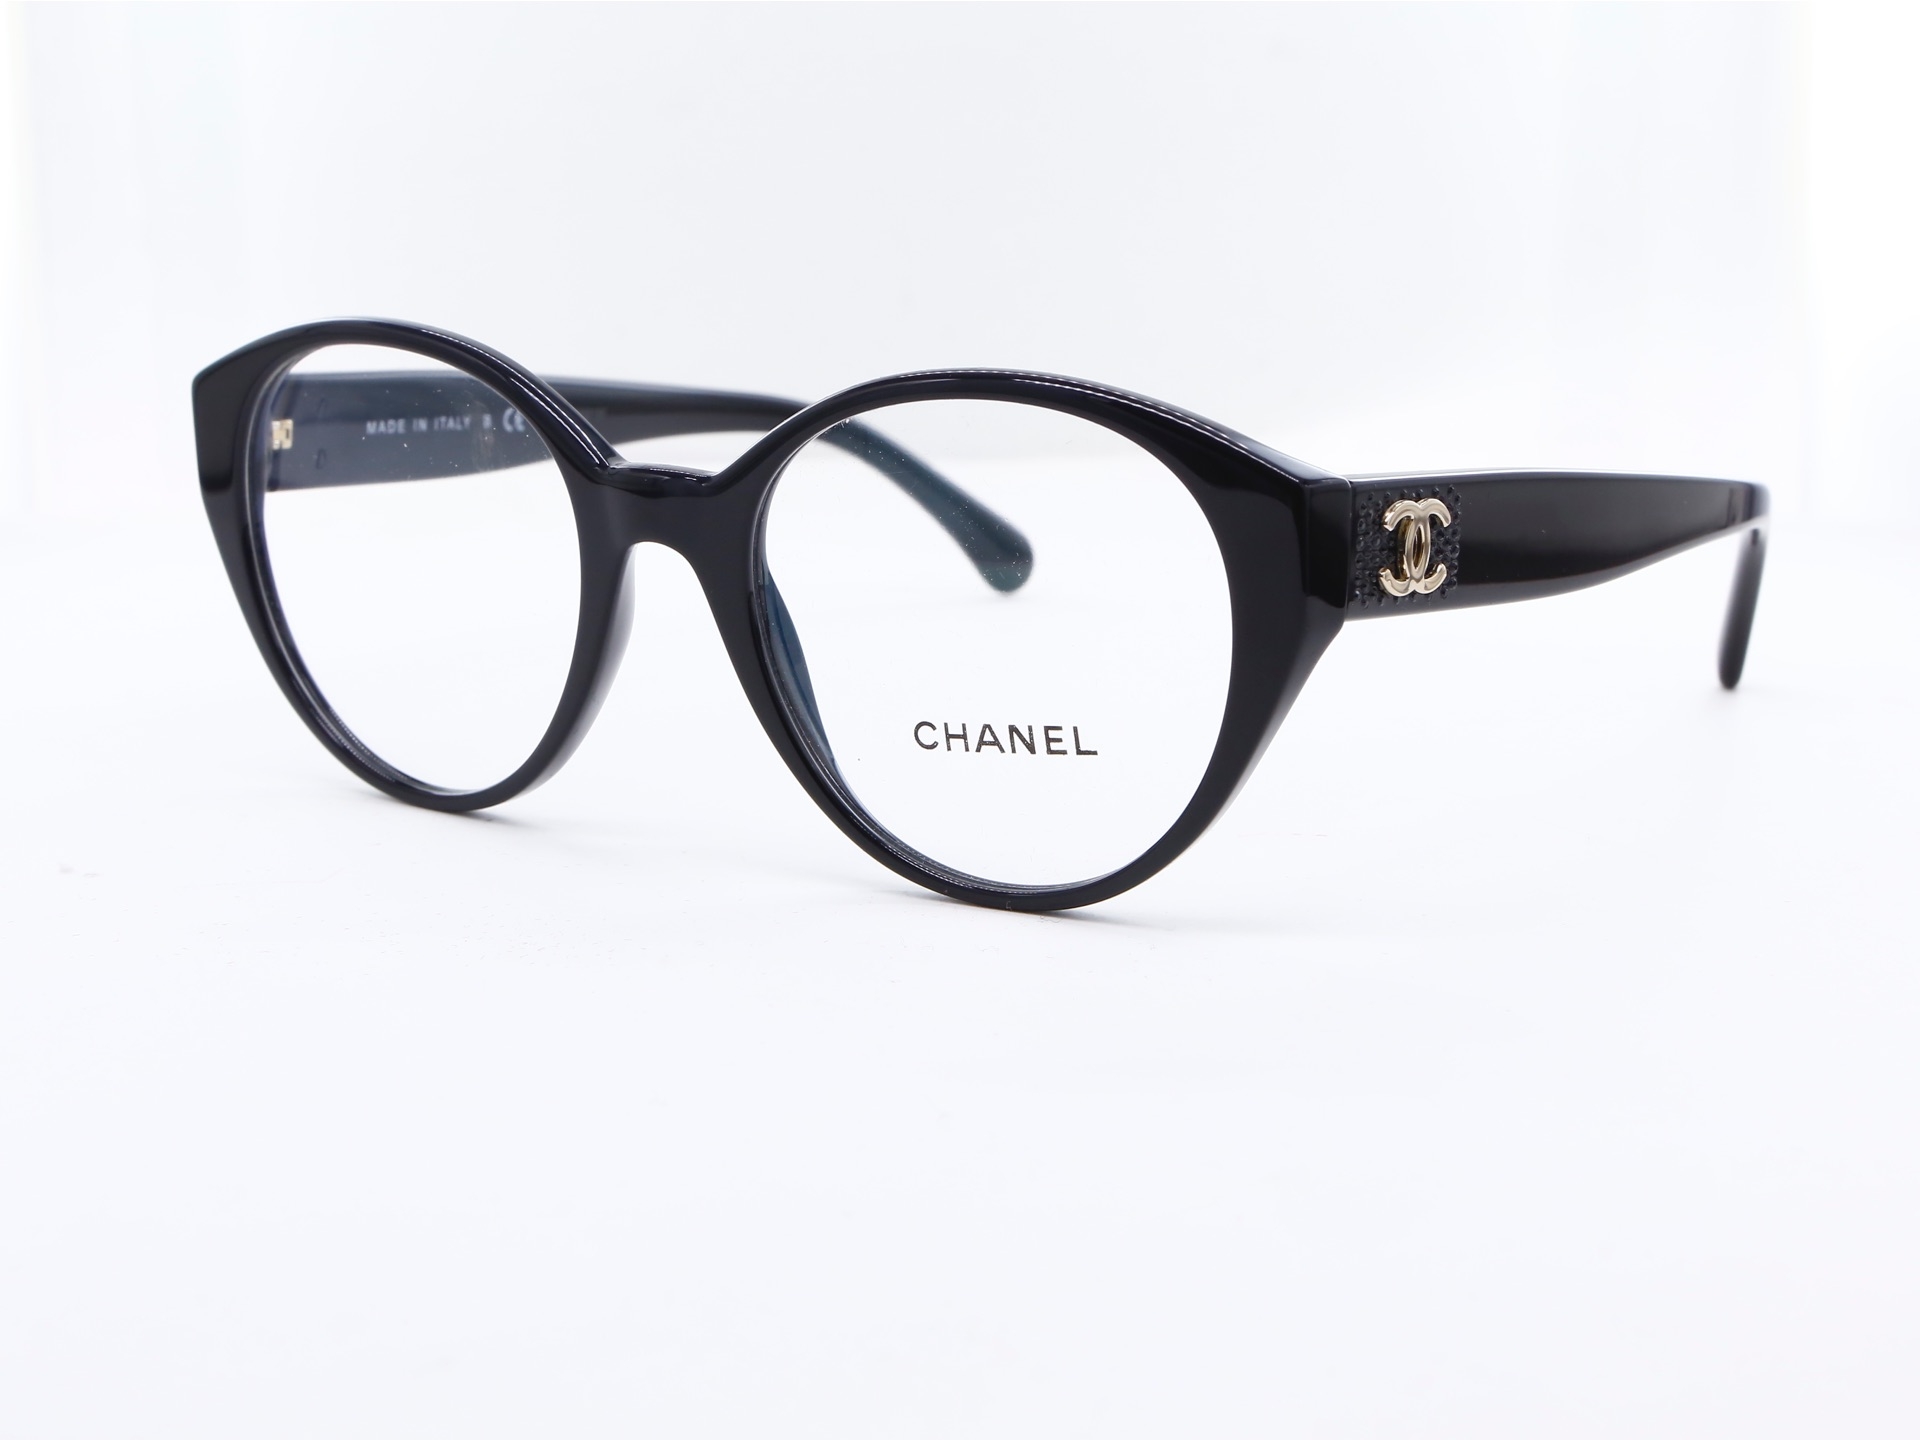 Chanel - ref: 87348